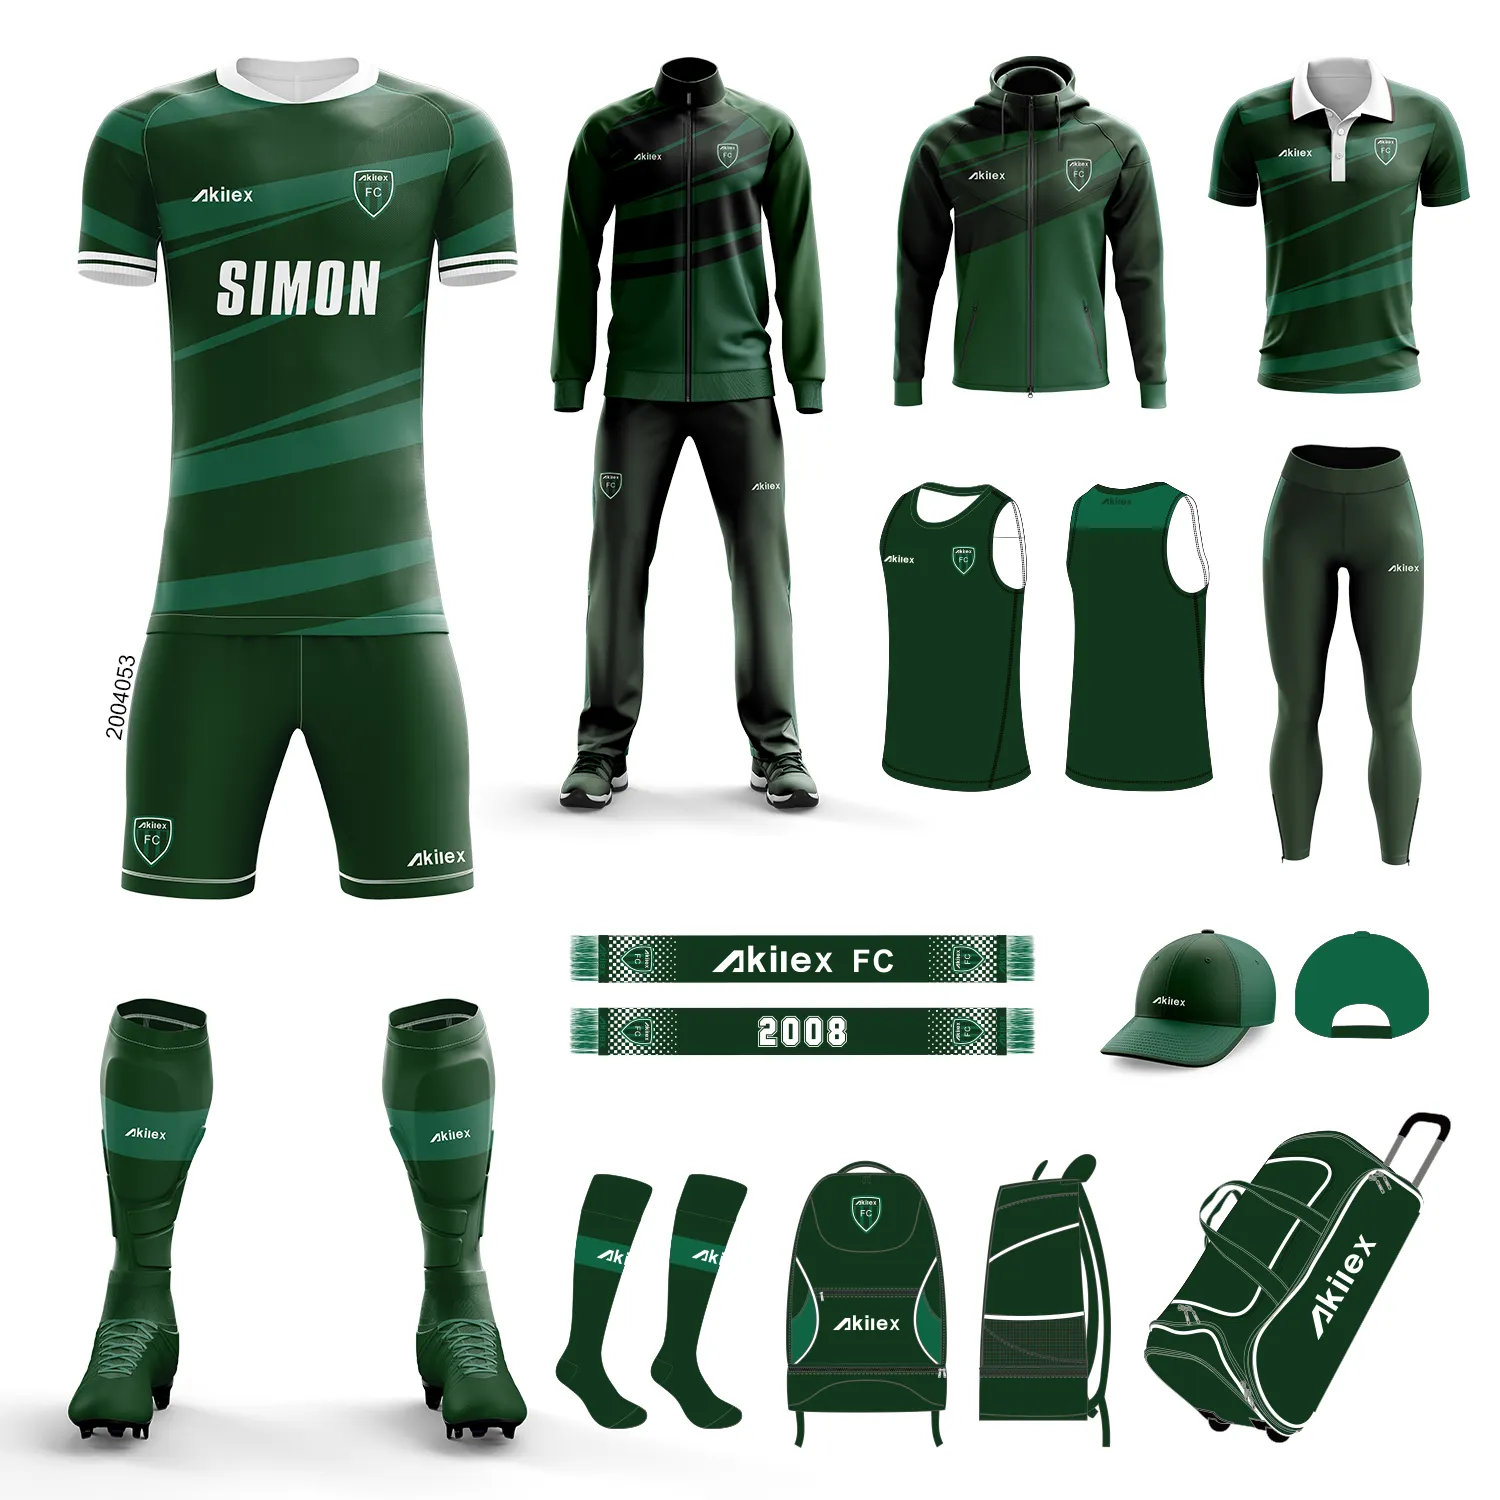 Uniforme de fútbol juvenil akilex, camiseta de fútbol personalizada por sublimación para hombre